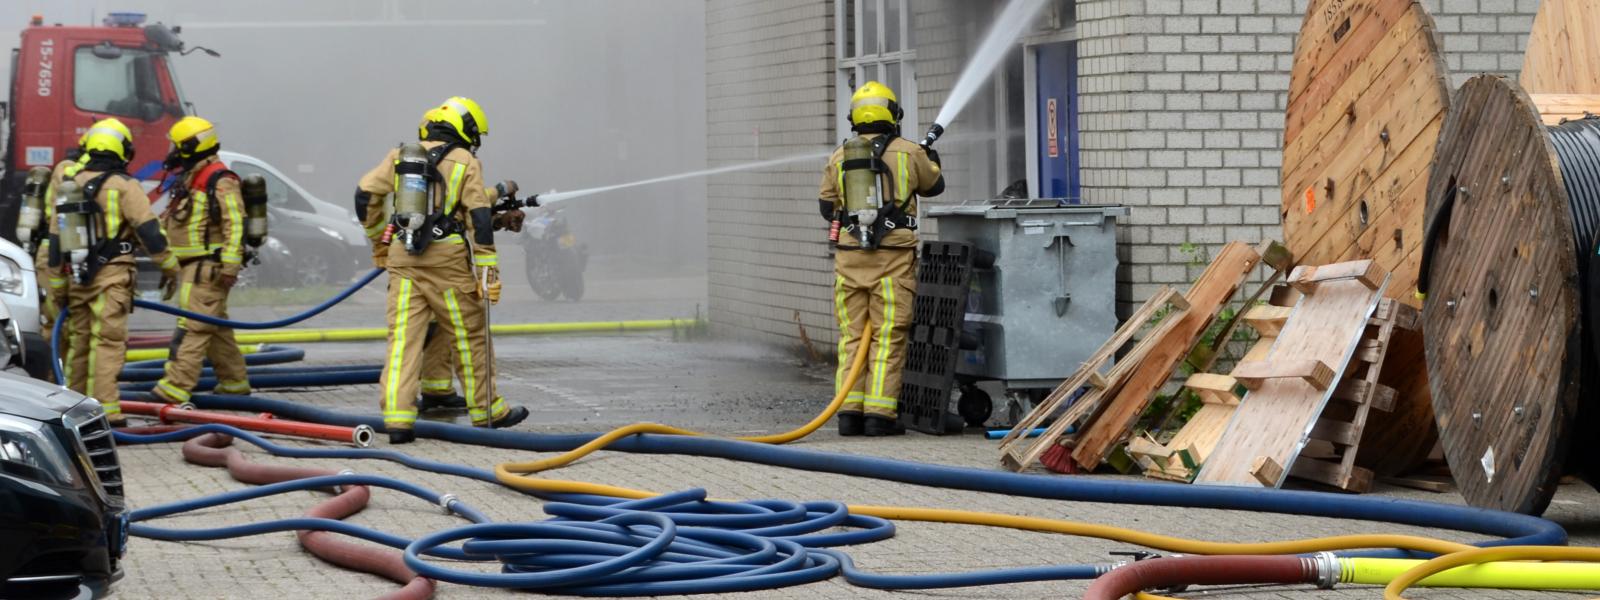 Brandweermensen blussen gebouwbrand